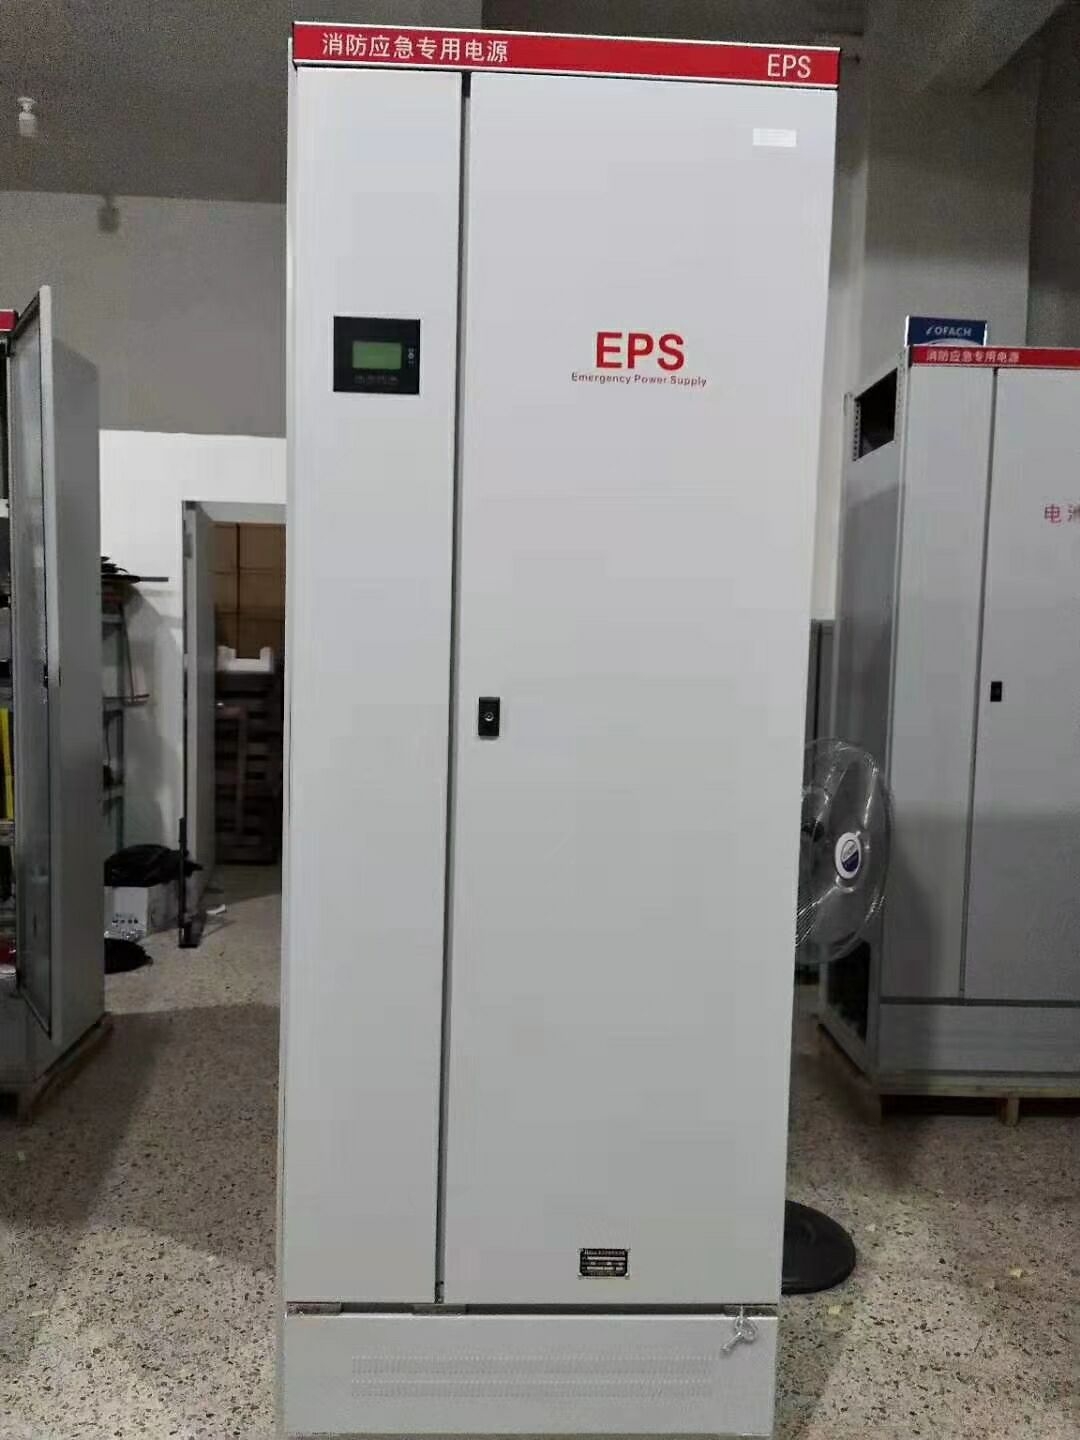 eps备用电源180kw更换逆变器变压器